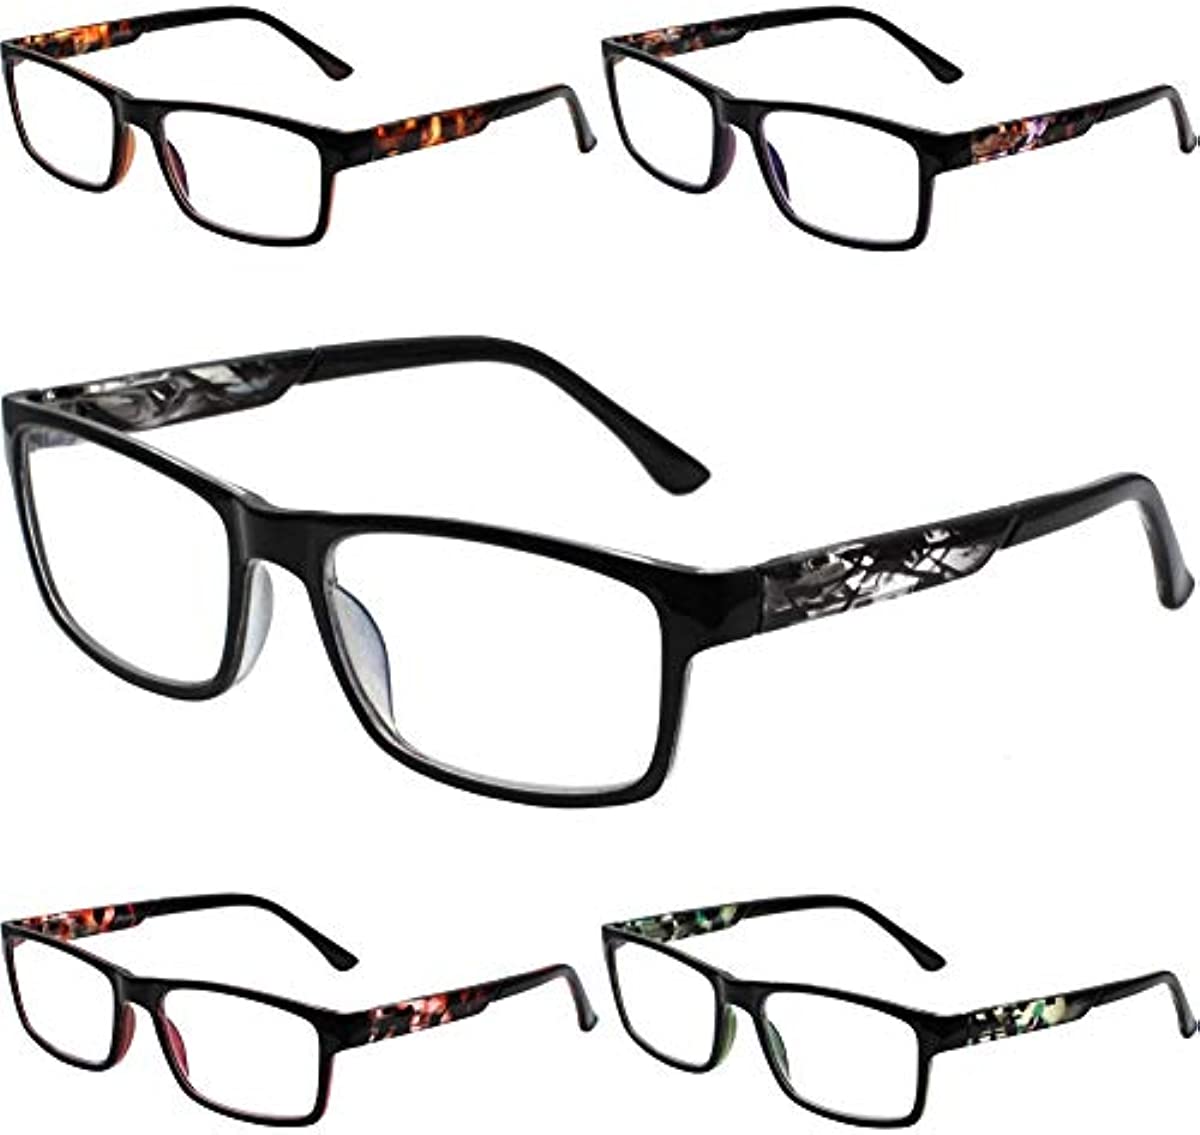 Henotin 5-Pack Reading Glasses Blue Light Blocking,Spring Hinge Readers for Women Men,Anti Glare UV Ray Filter Eyeglasses